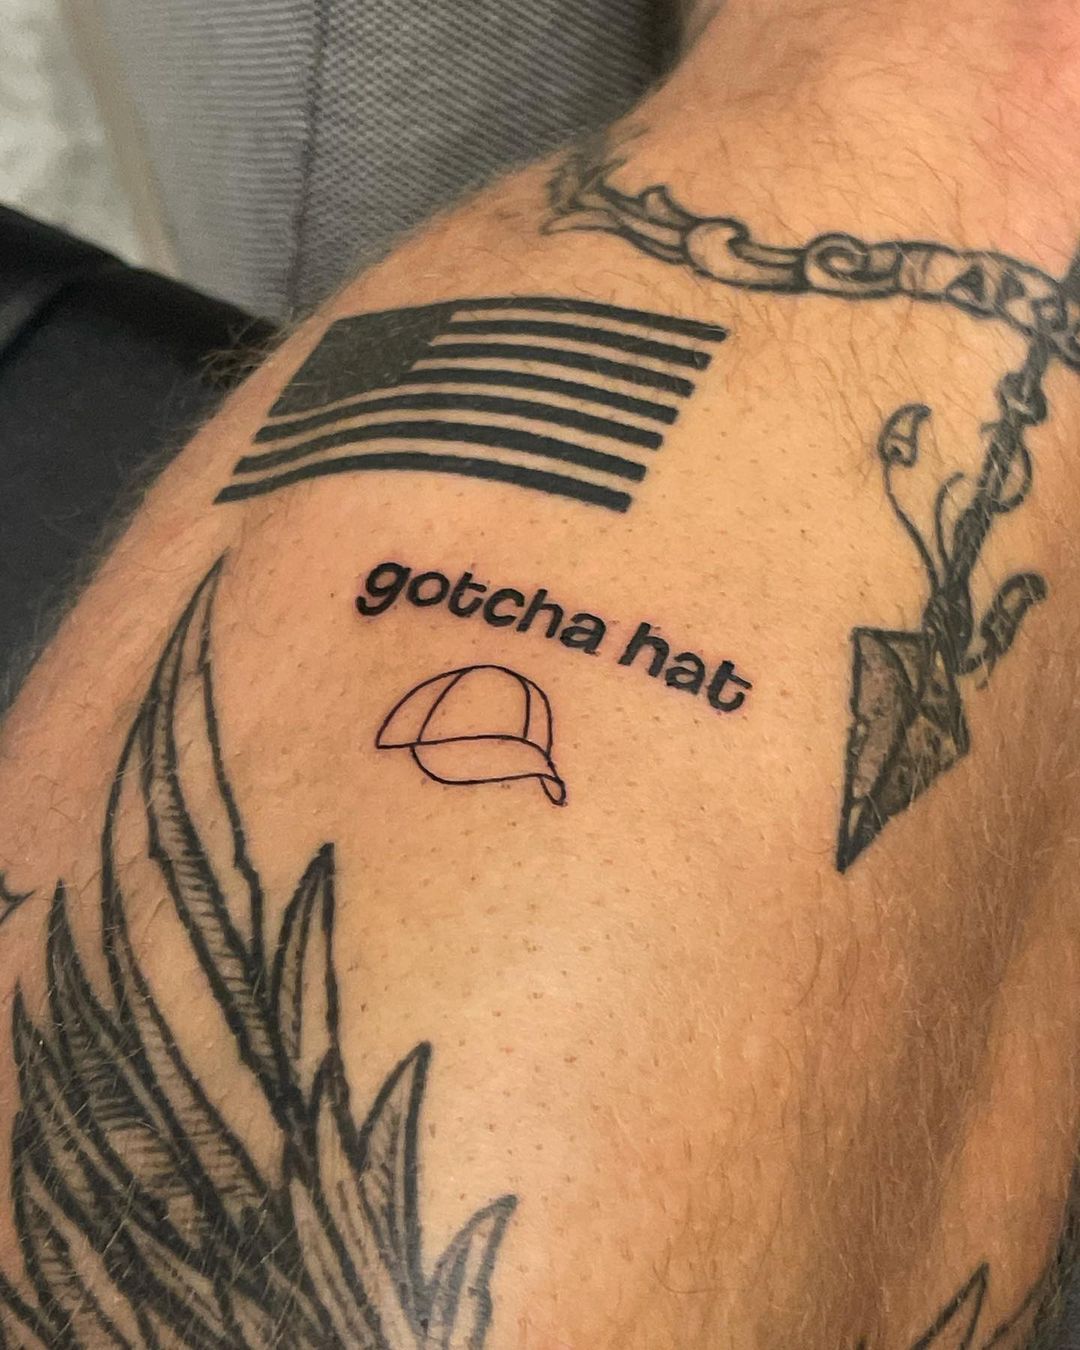 Jake Paul Trolls Floyd Mayweather By Getting Gotcha Hat Tattoo Following Brawl